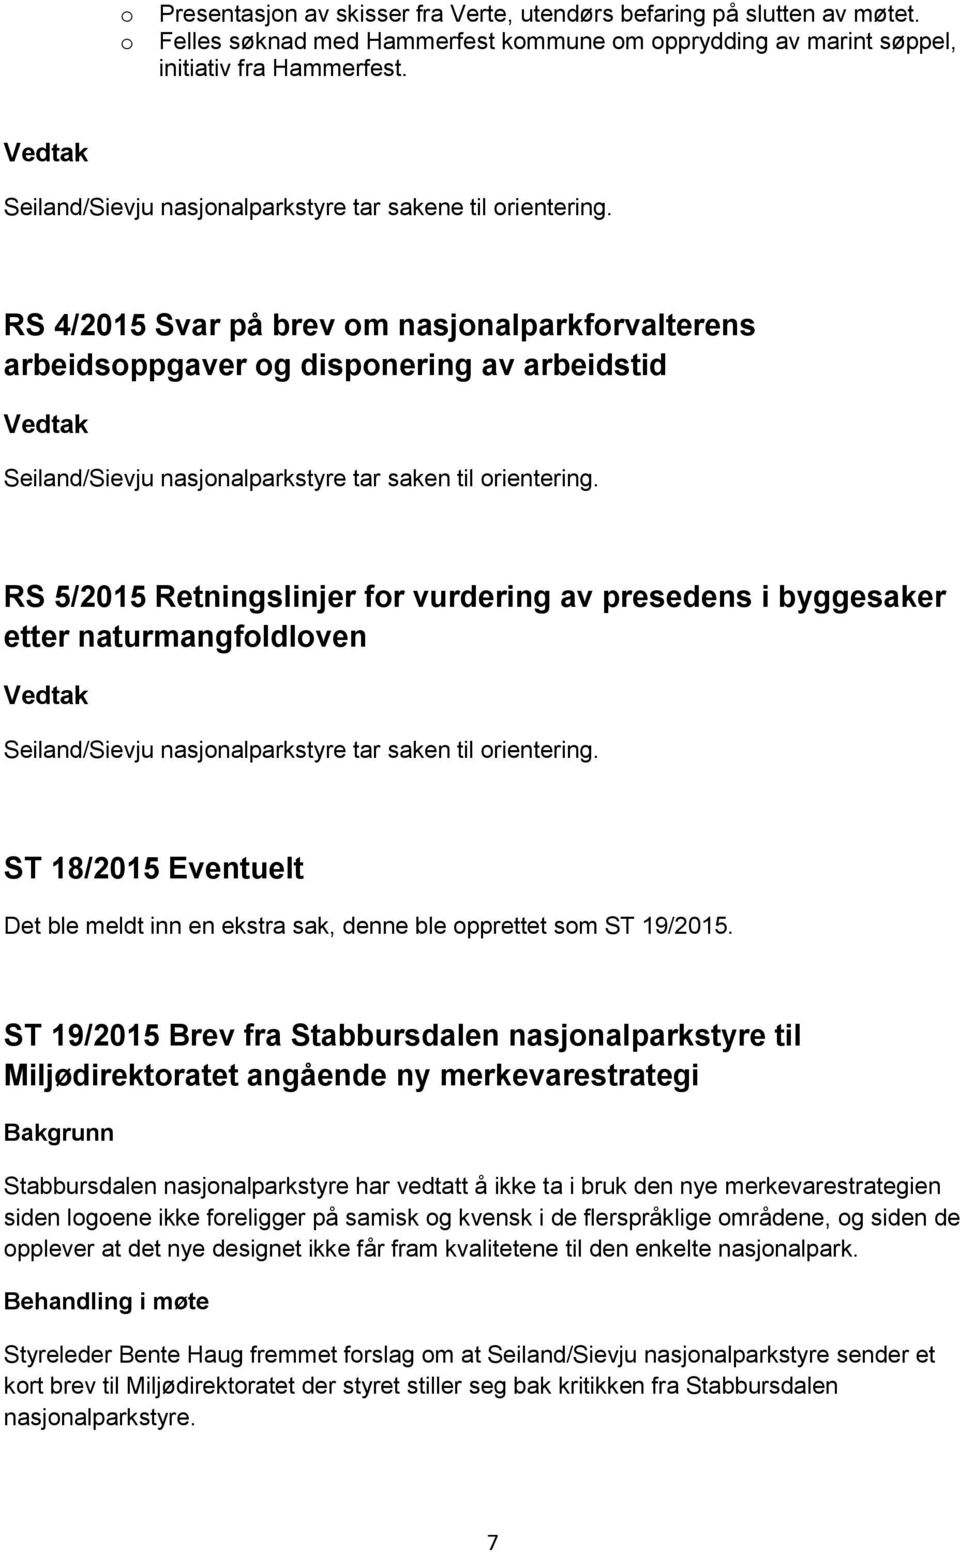 RS 4/2015 Svar på brev om nasjonalparkforvalterens arbeidsoppgaver og disponering av arbeidstid Seiland/Sievju nasjonalparkstyre tar saken til orientering.